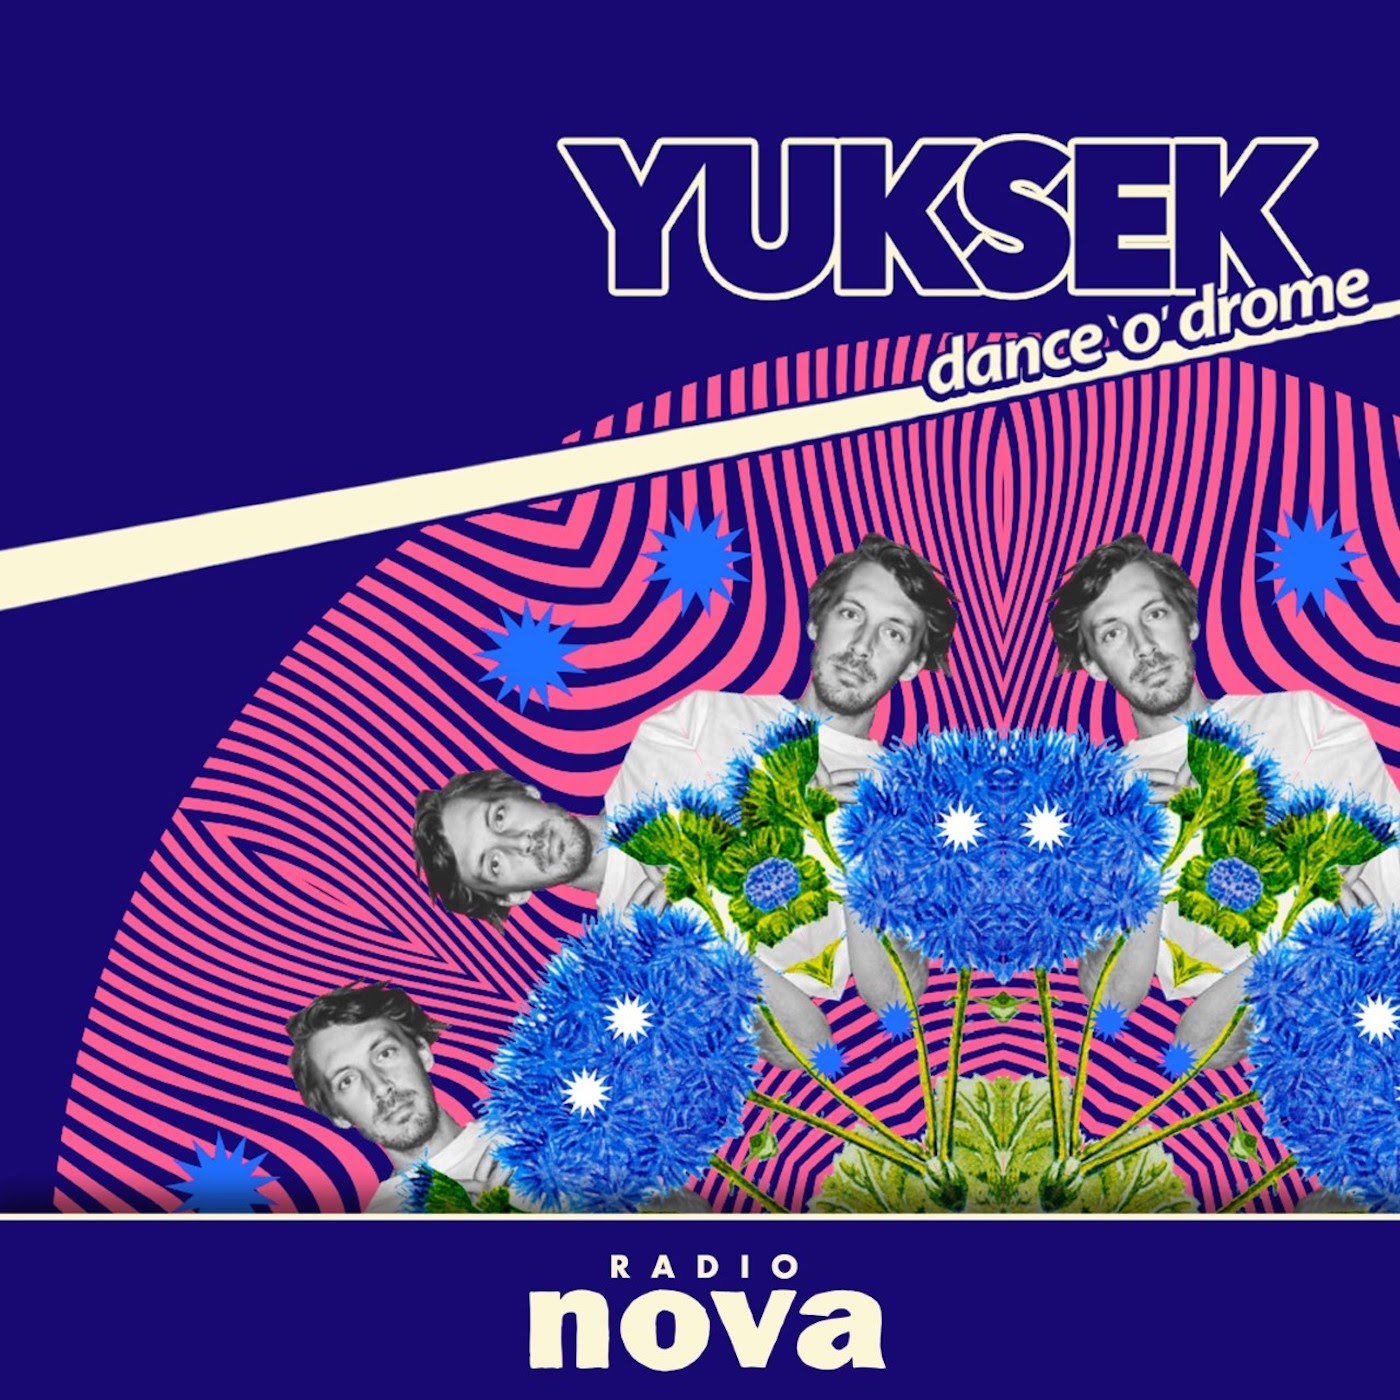 « Dance’o’drome » #22 : le mix de Yuksek, avec Souleance, sur Radio Nova